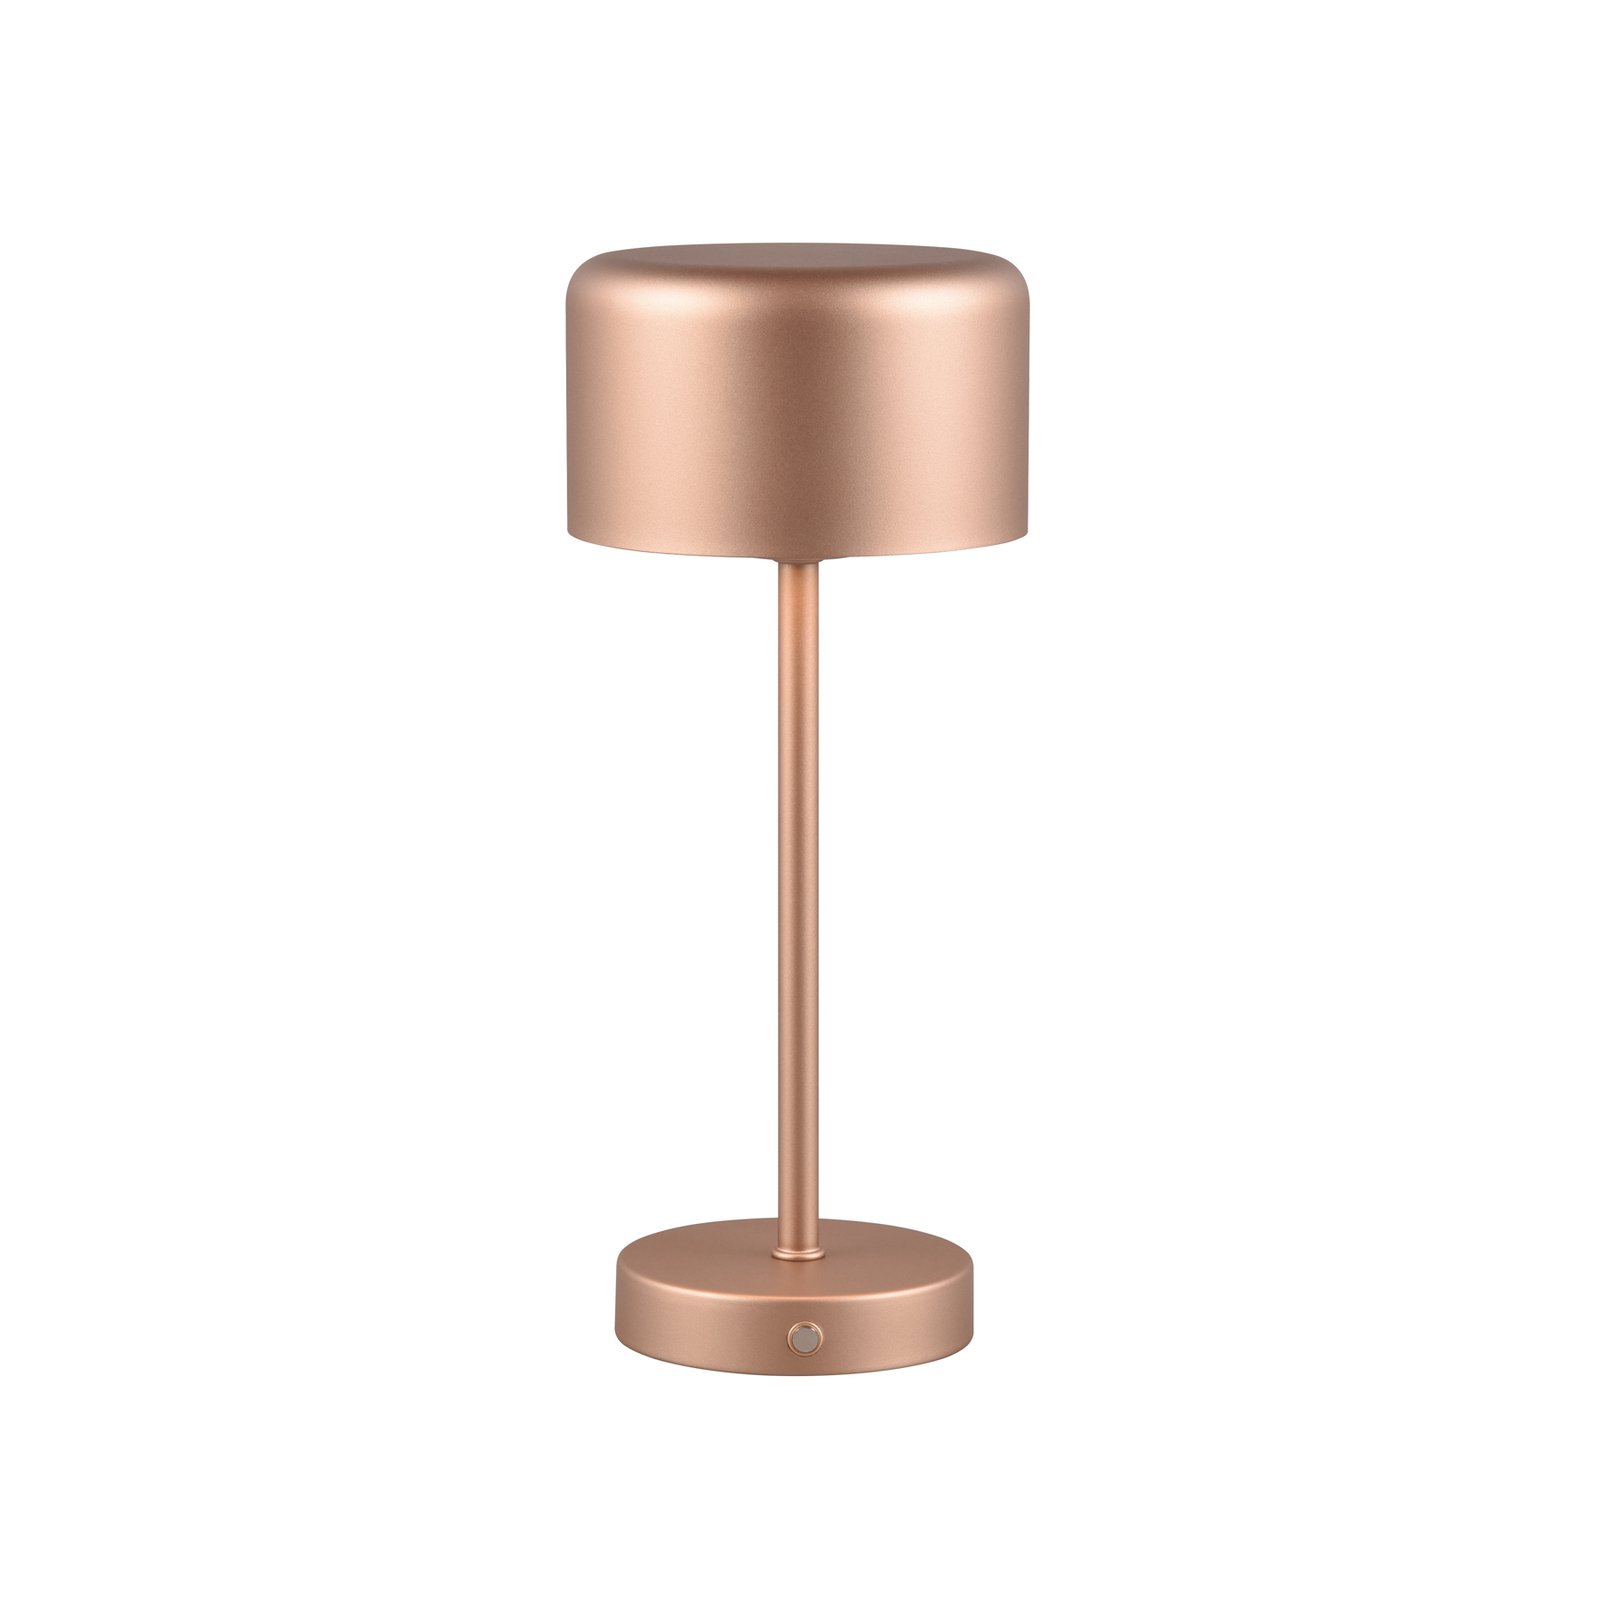 Jeff LED oppladbar bordlampe, kaffe, høyde 30 cm, metall